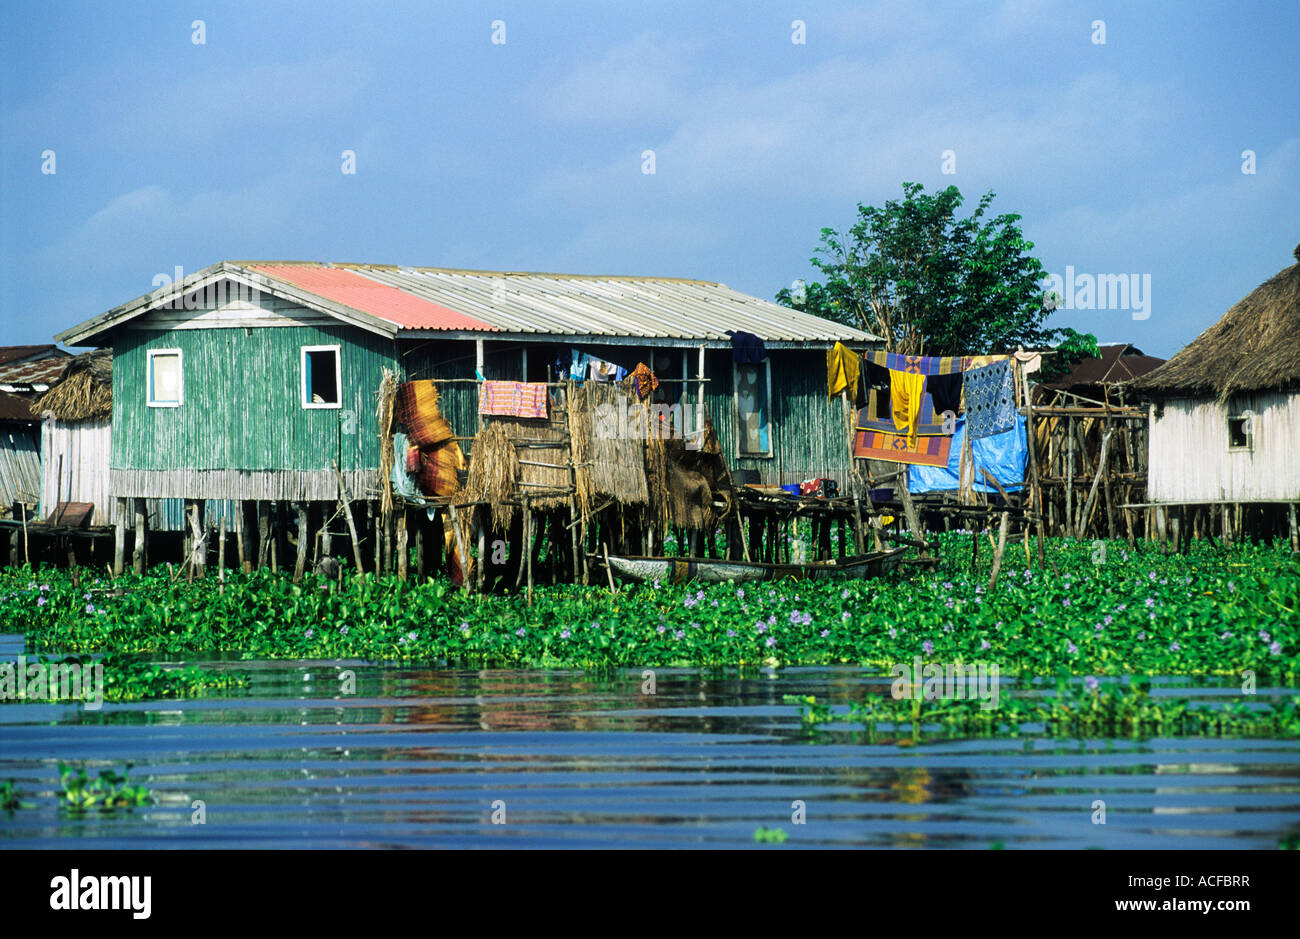 Houses on stilts amongst aquatic vegetation Ganvie; Benin Stock Photo